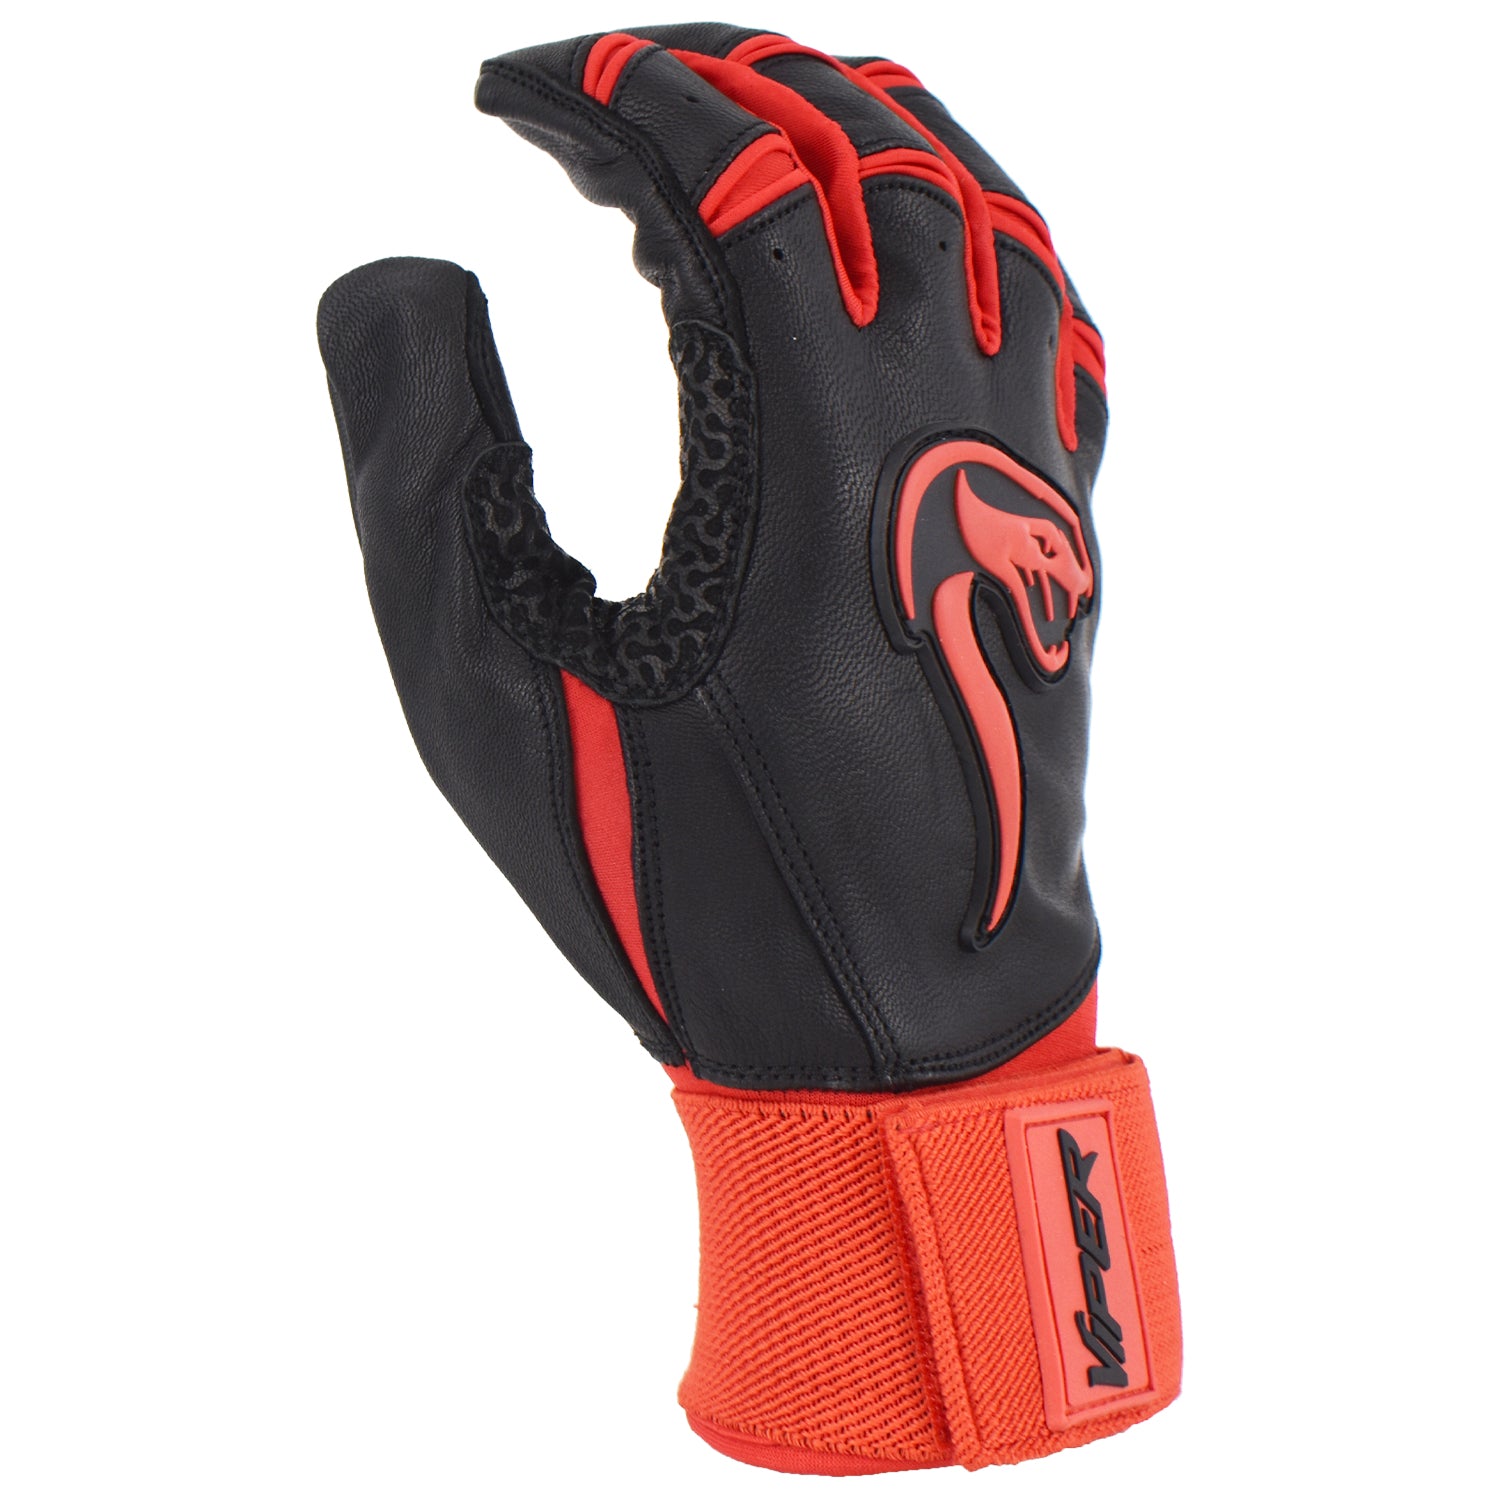 Viper Grindstone Long Cuff Batting Glove - Black/Red